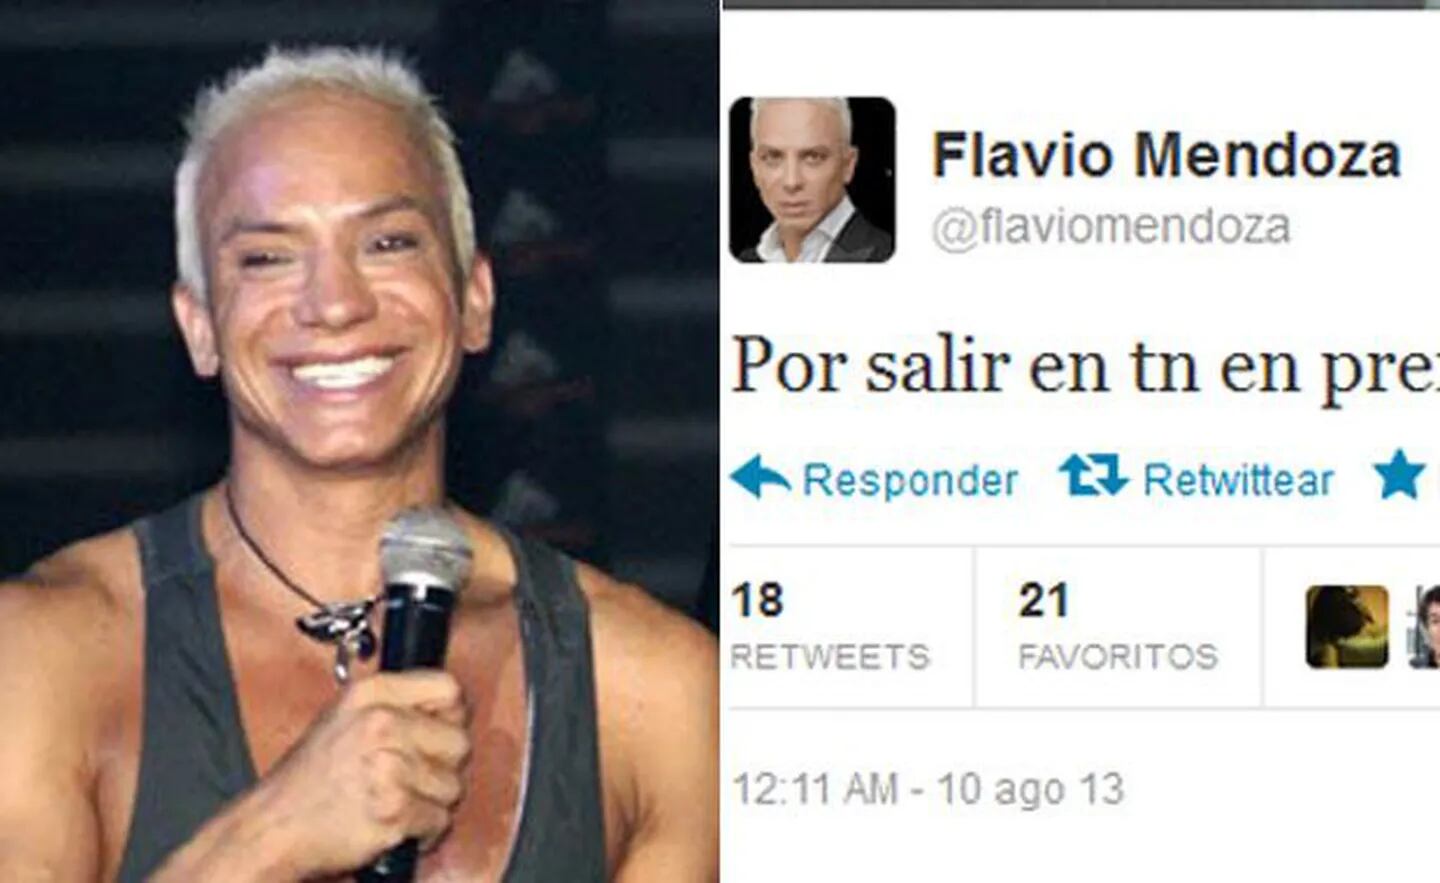 El blooper tuitero de Flavio Mendoza. (Fotos: Web y Twitter)